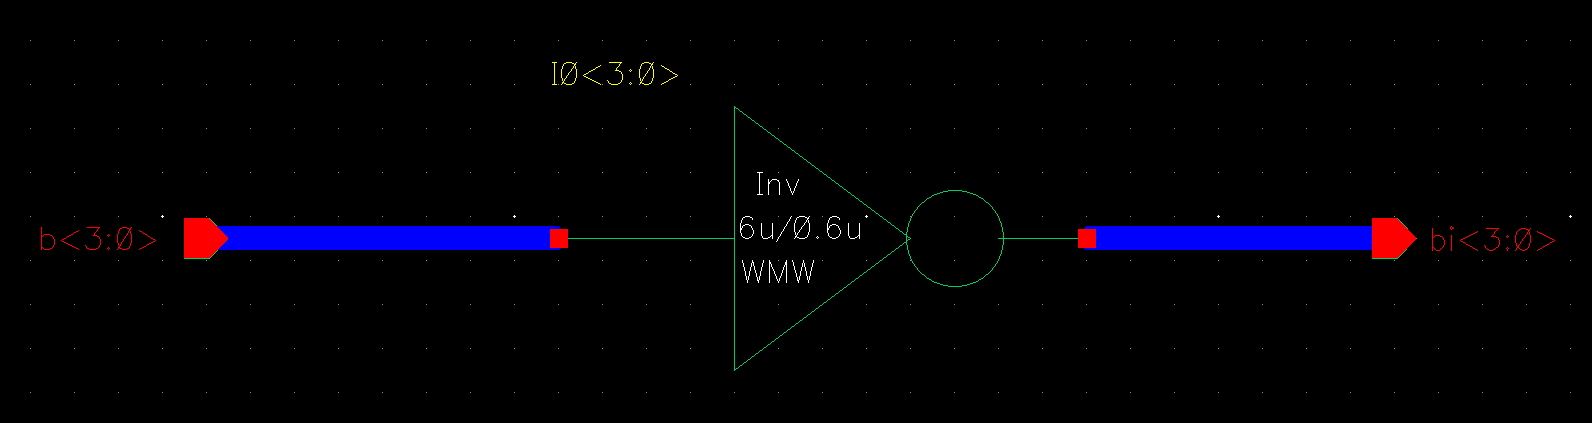 4bit inverter schematic